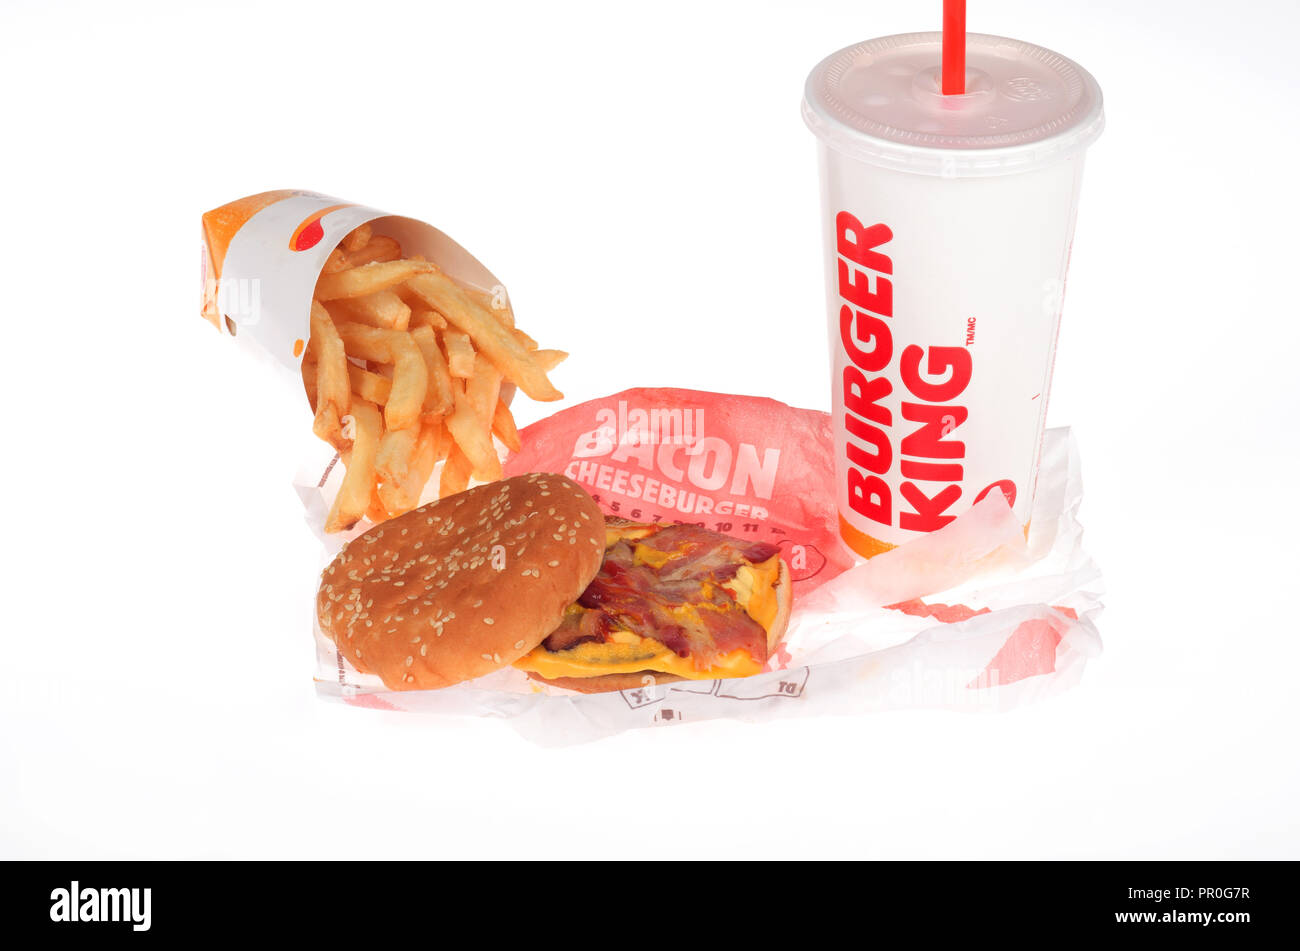 Repas Burger avec du bacon cheeseburger, frites ou frites et un soda sur fond blanc Banque D'Images